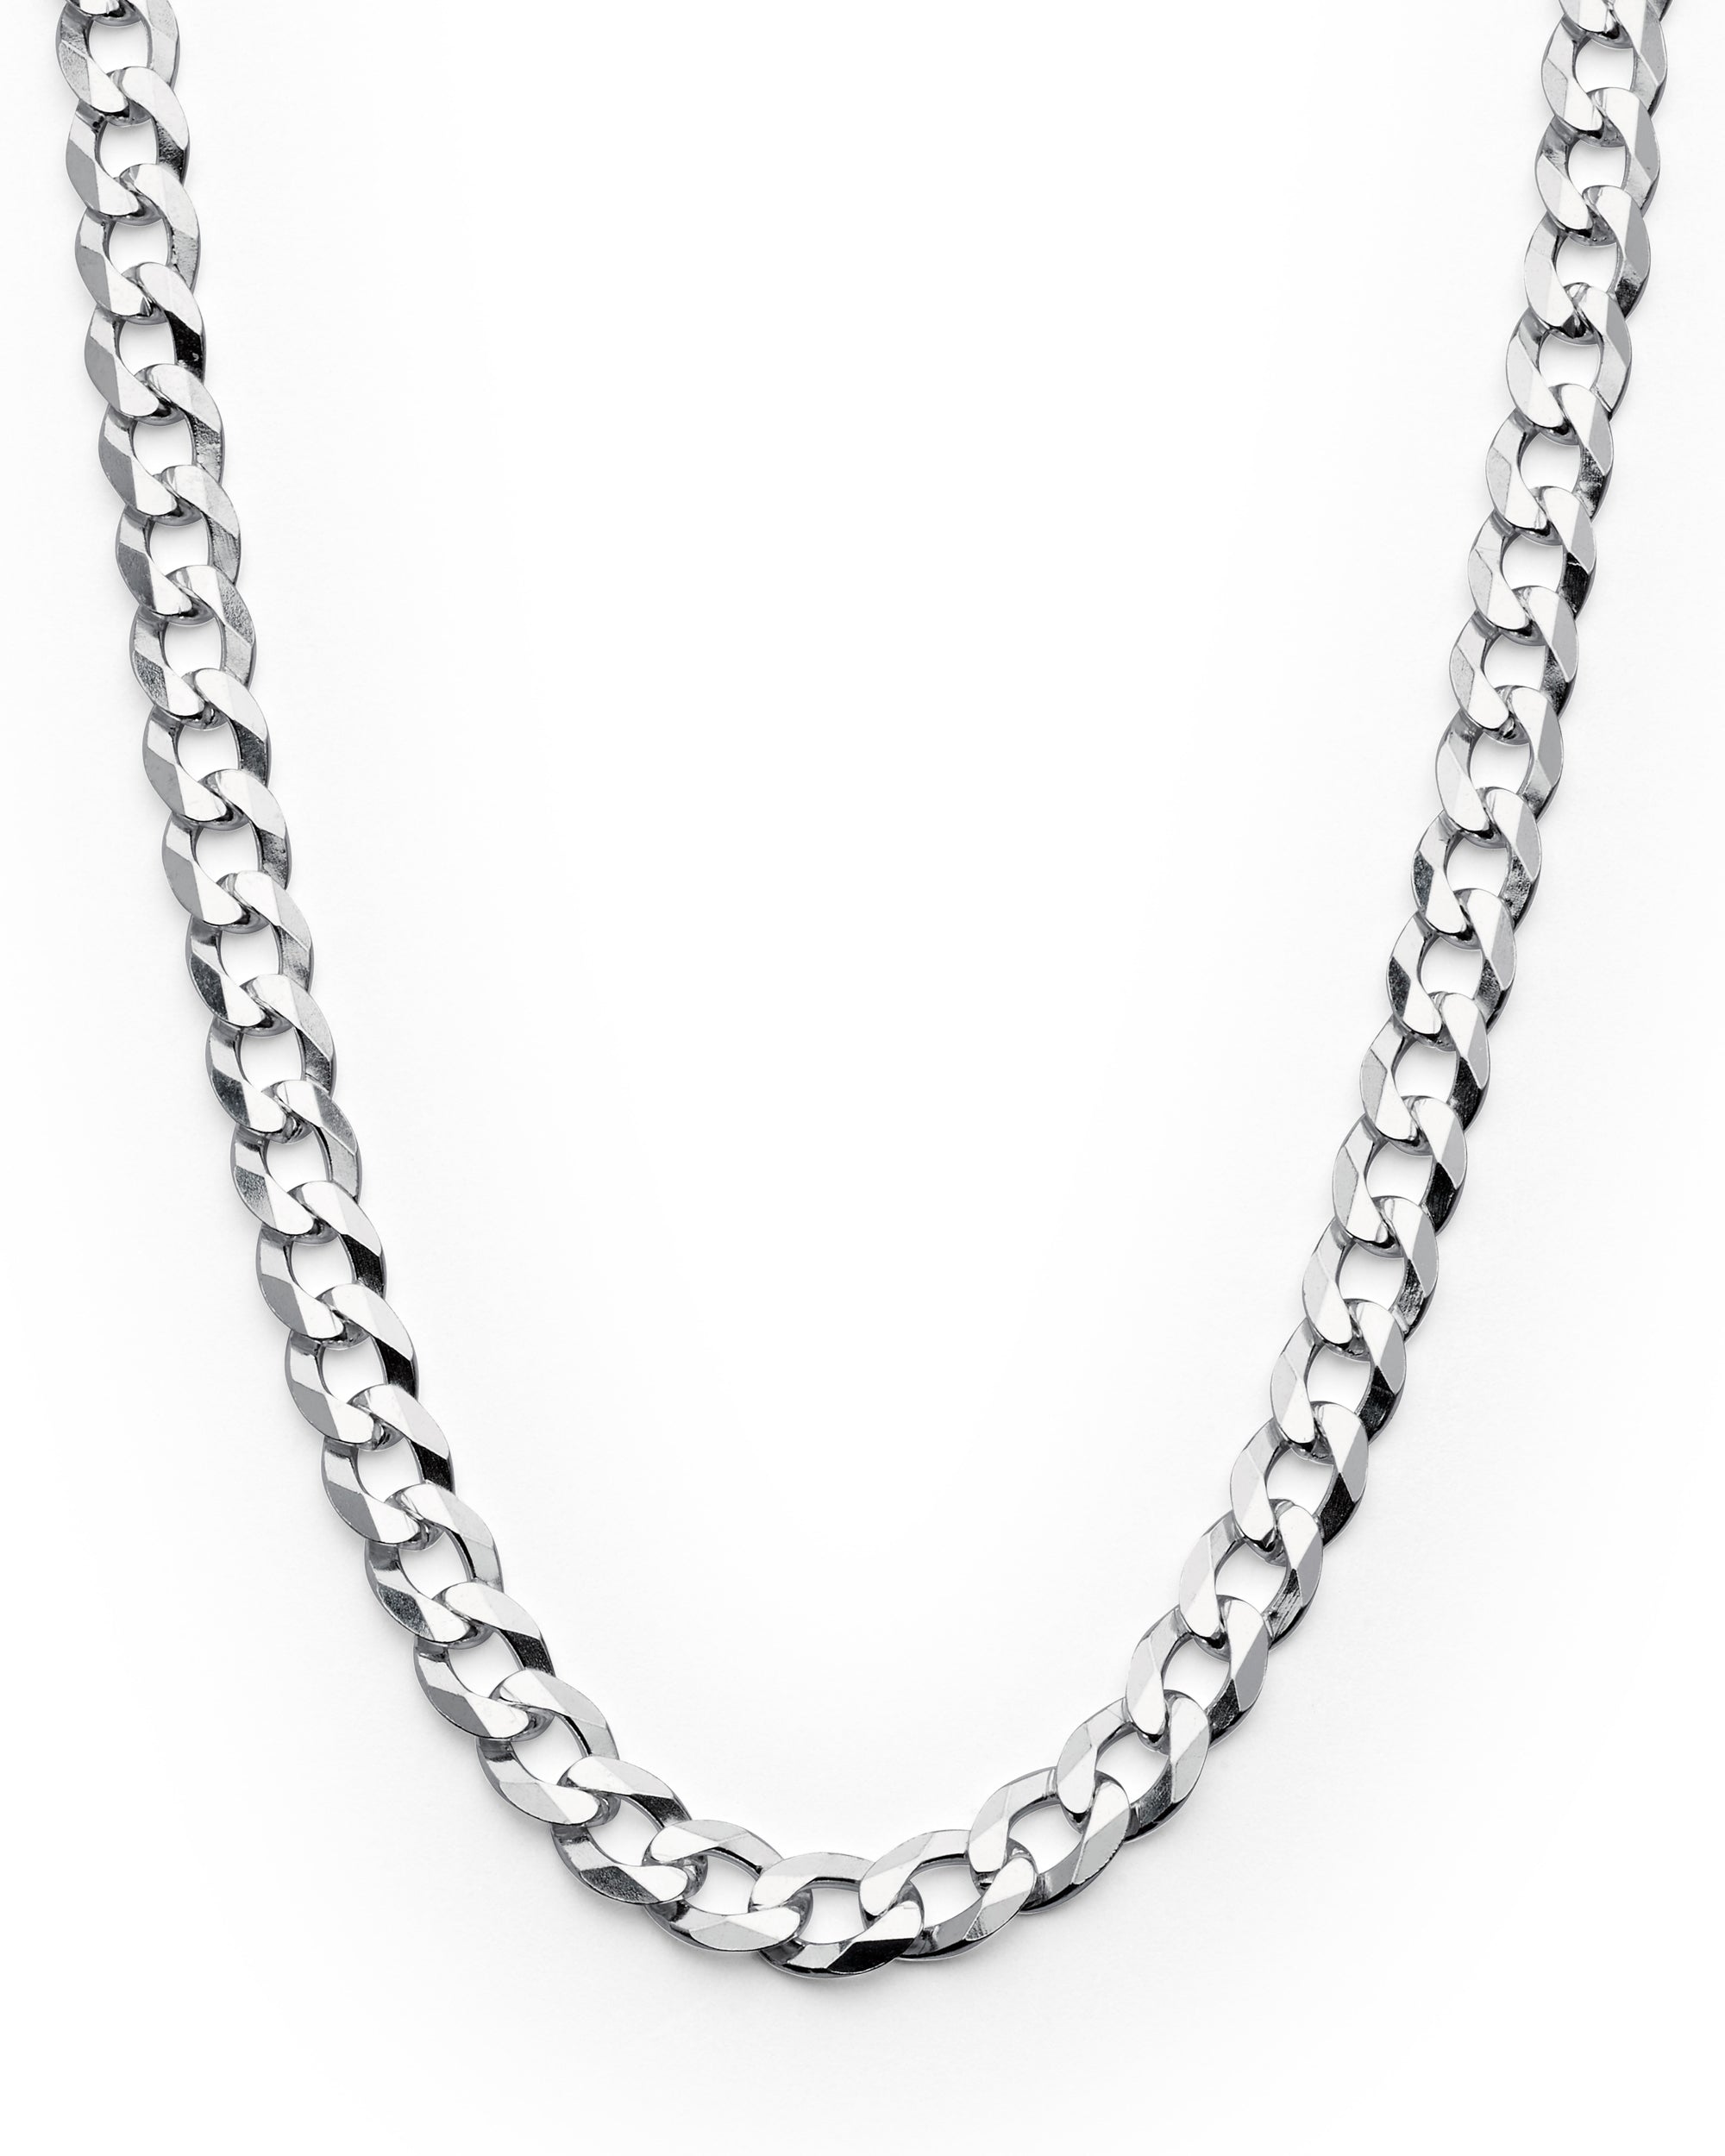 Antique Silver Mens Box Chain Necklace, Unisex Box Link Chain Necklace, Stainless  Steel Chain Necklace, Square Chain Necklace, Mens Jewelry 